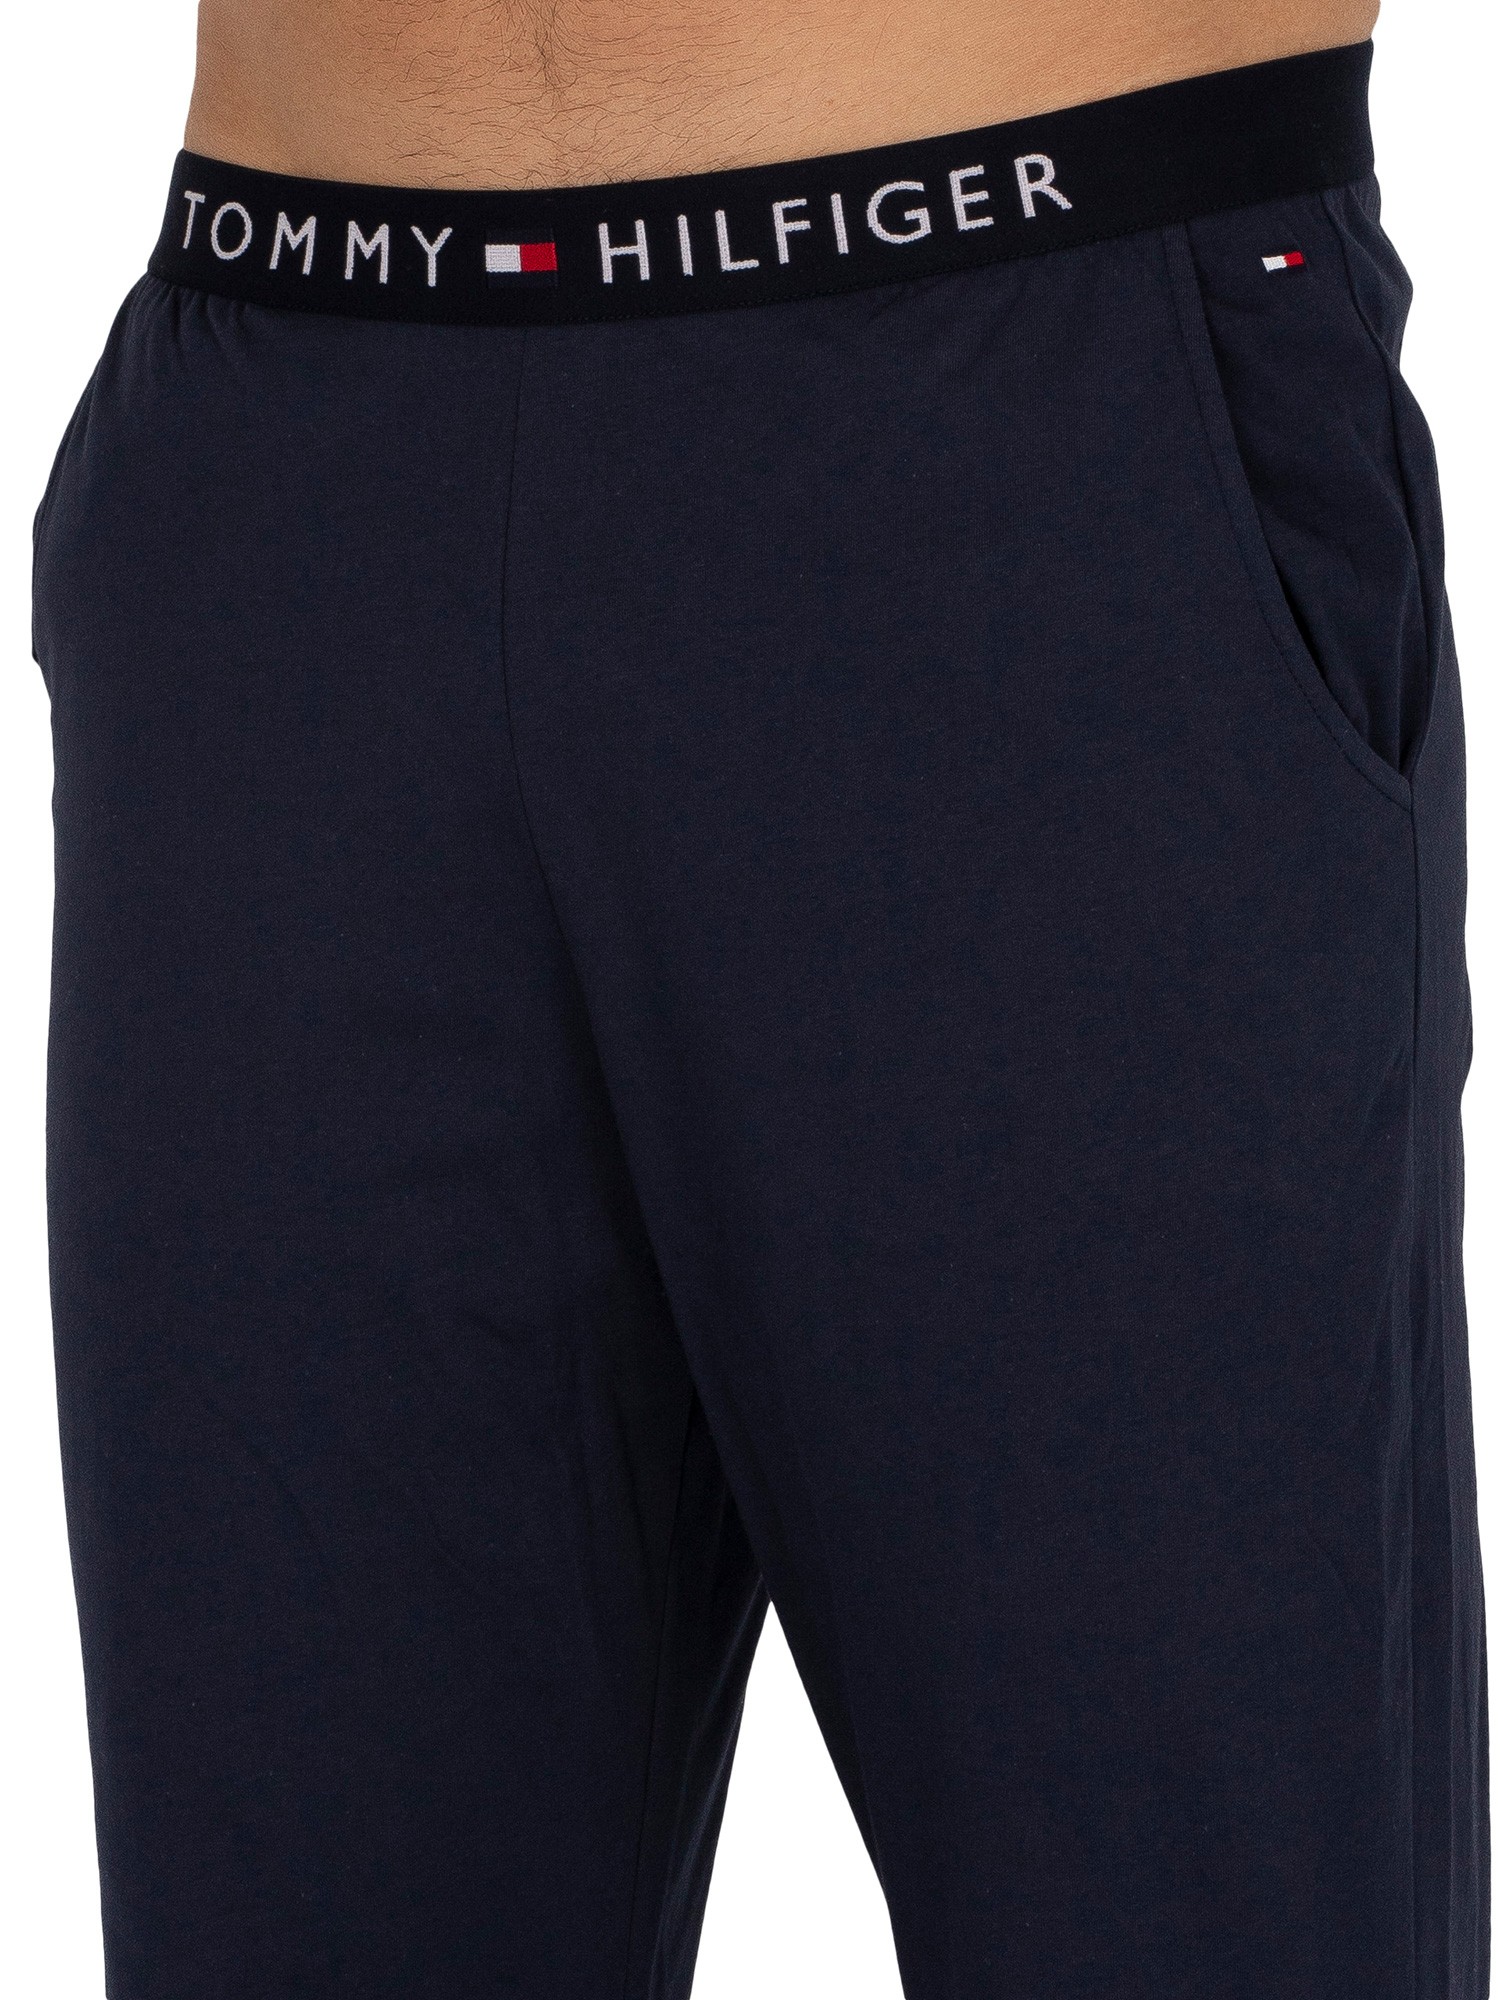 Tommy Hilfiger Logo Pyjama Bottoms - Navy Blazer | Standout